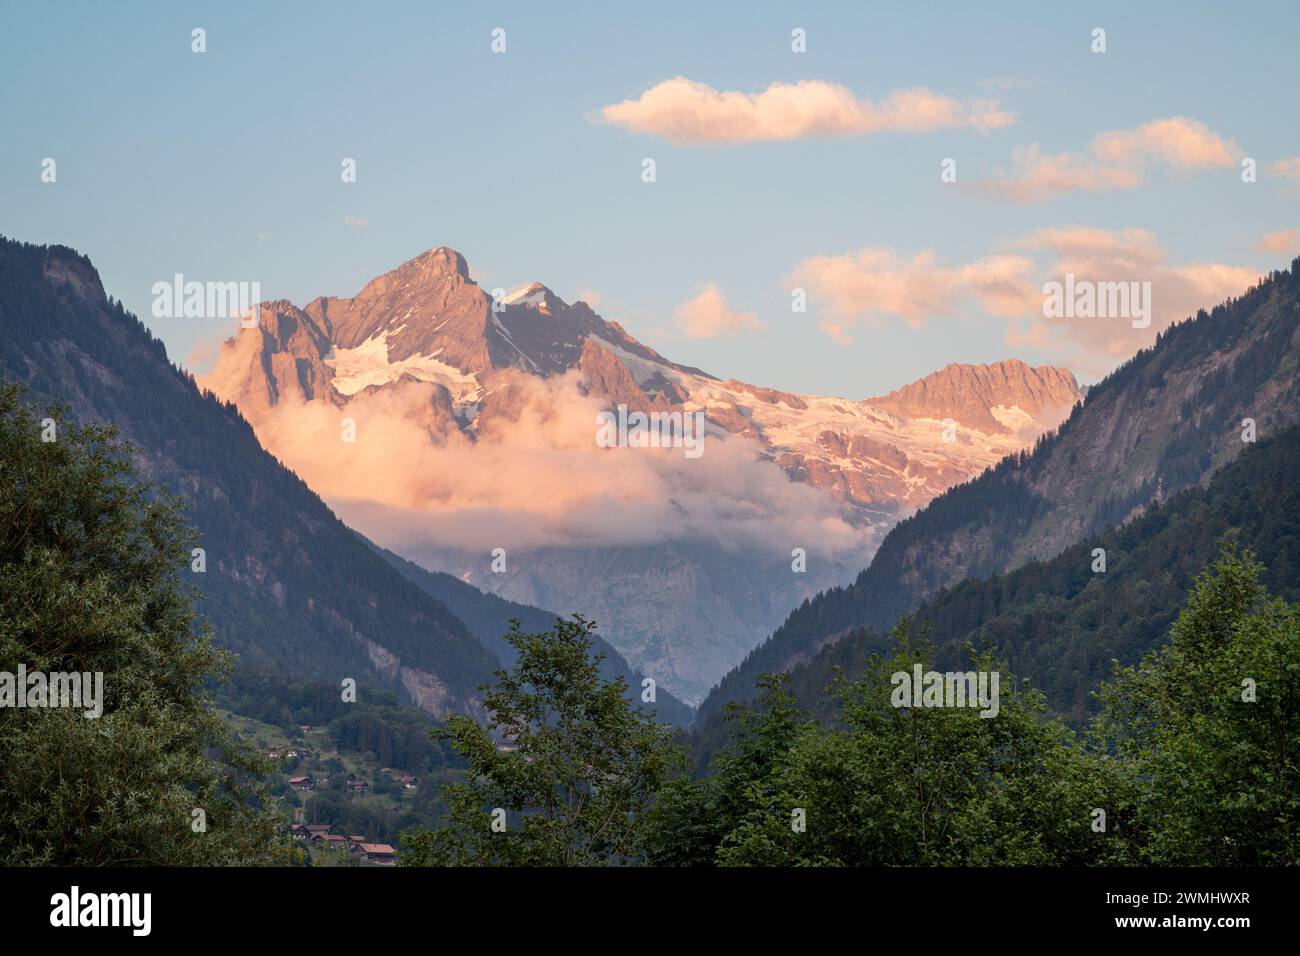 Le pic des alpes dans la lumière du coucher du soleil - Suisse Banque D'Images